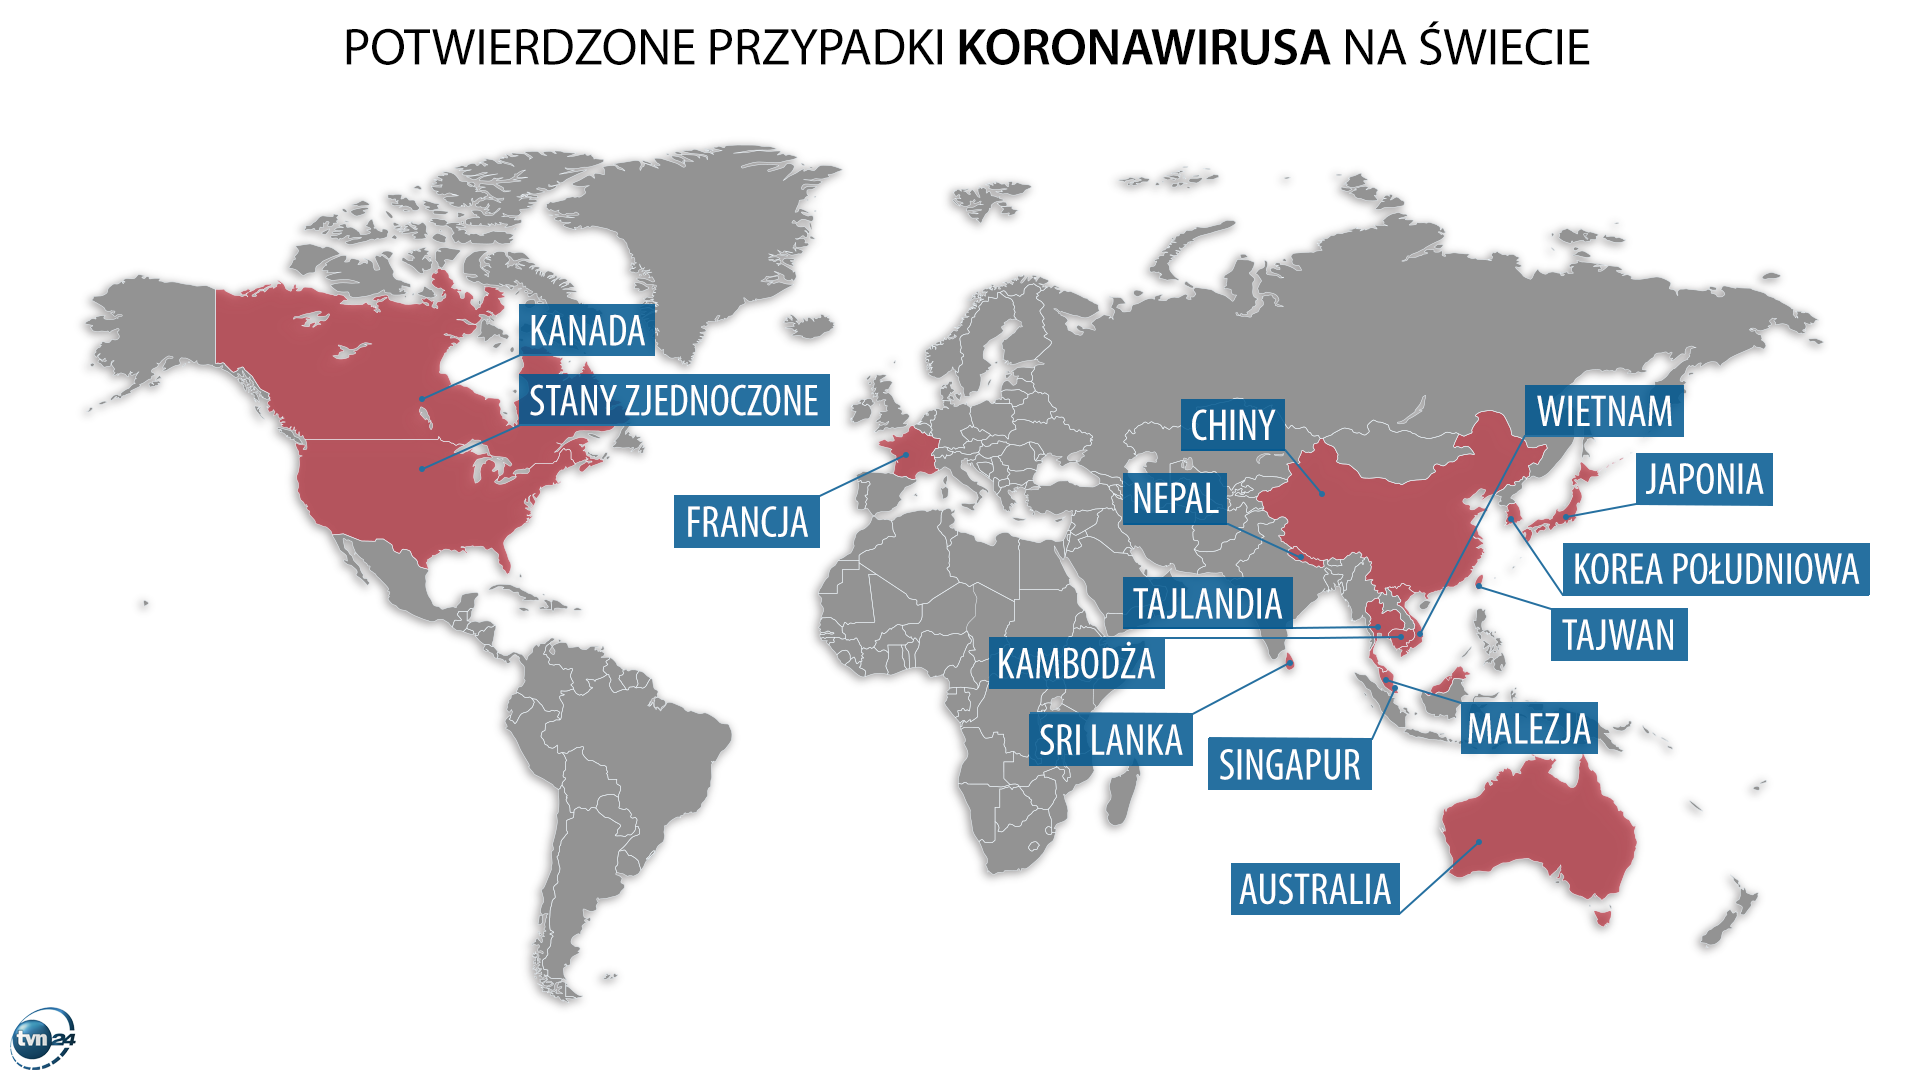 Potwierdzone przypadki koronawirusa na świecie